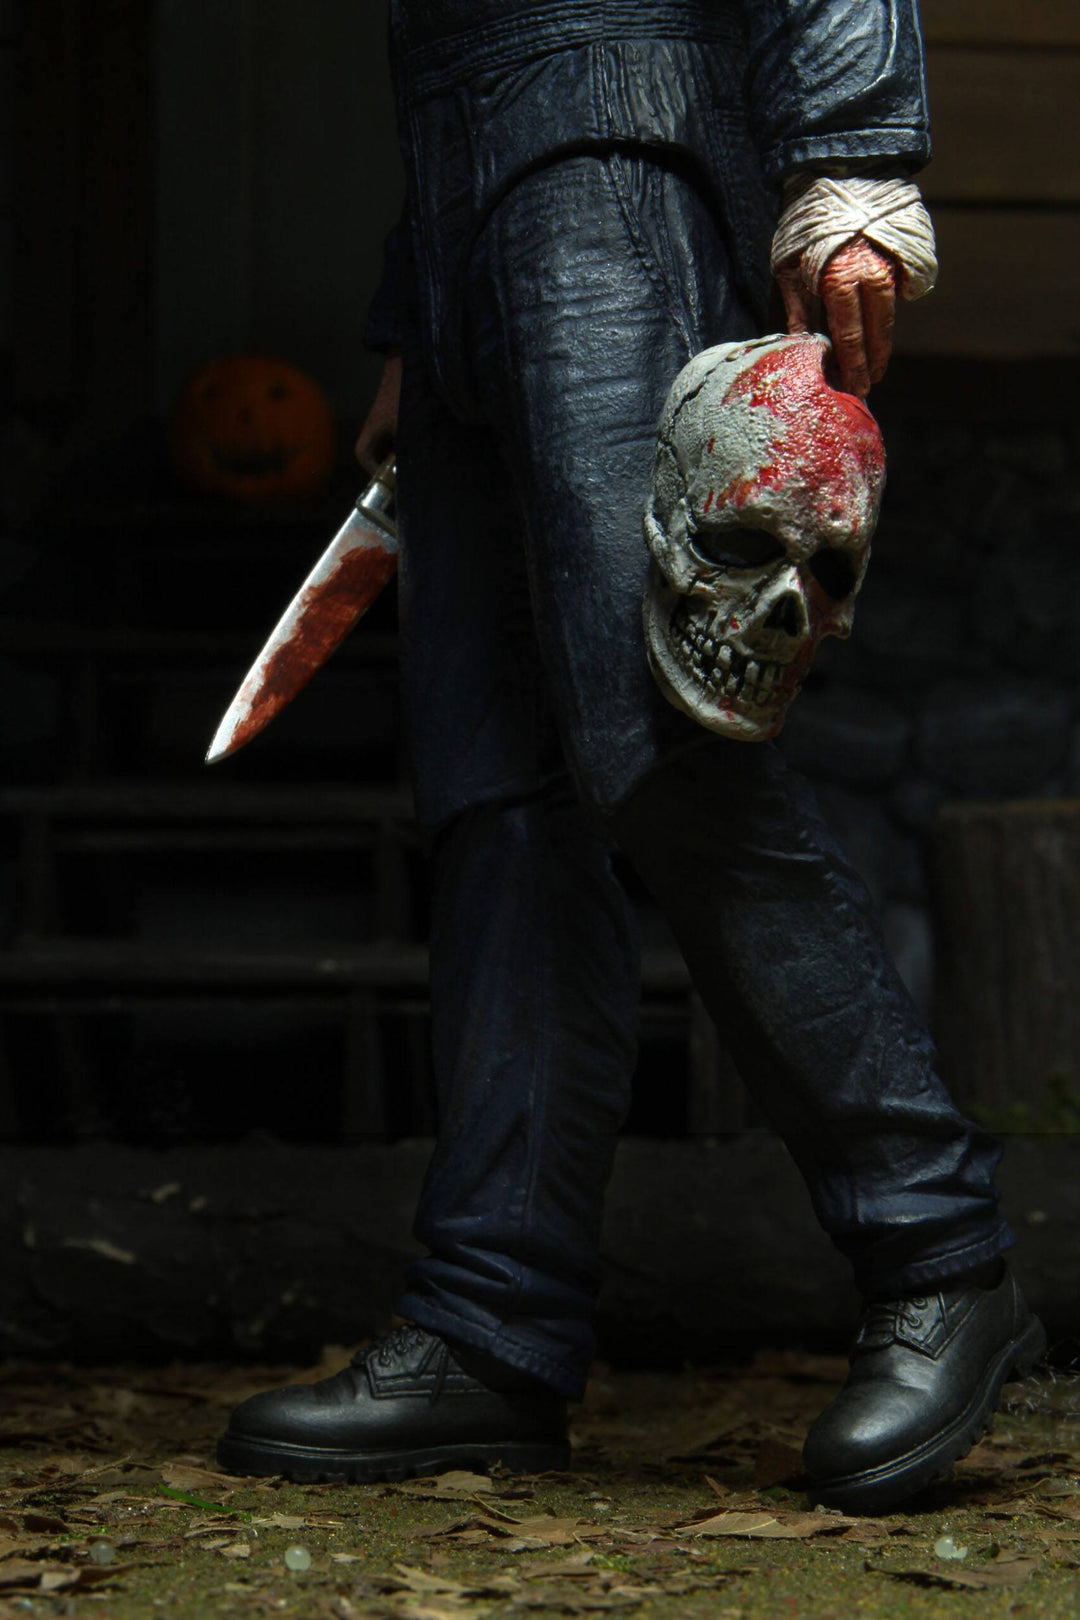 Halloween (2021) Michael Myers Halloween Kills Ultimate 7" Scale Action Figure